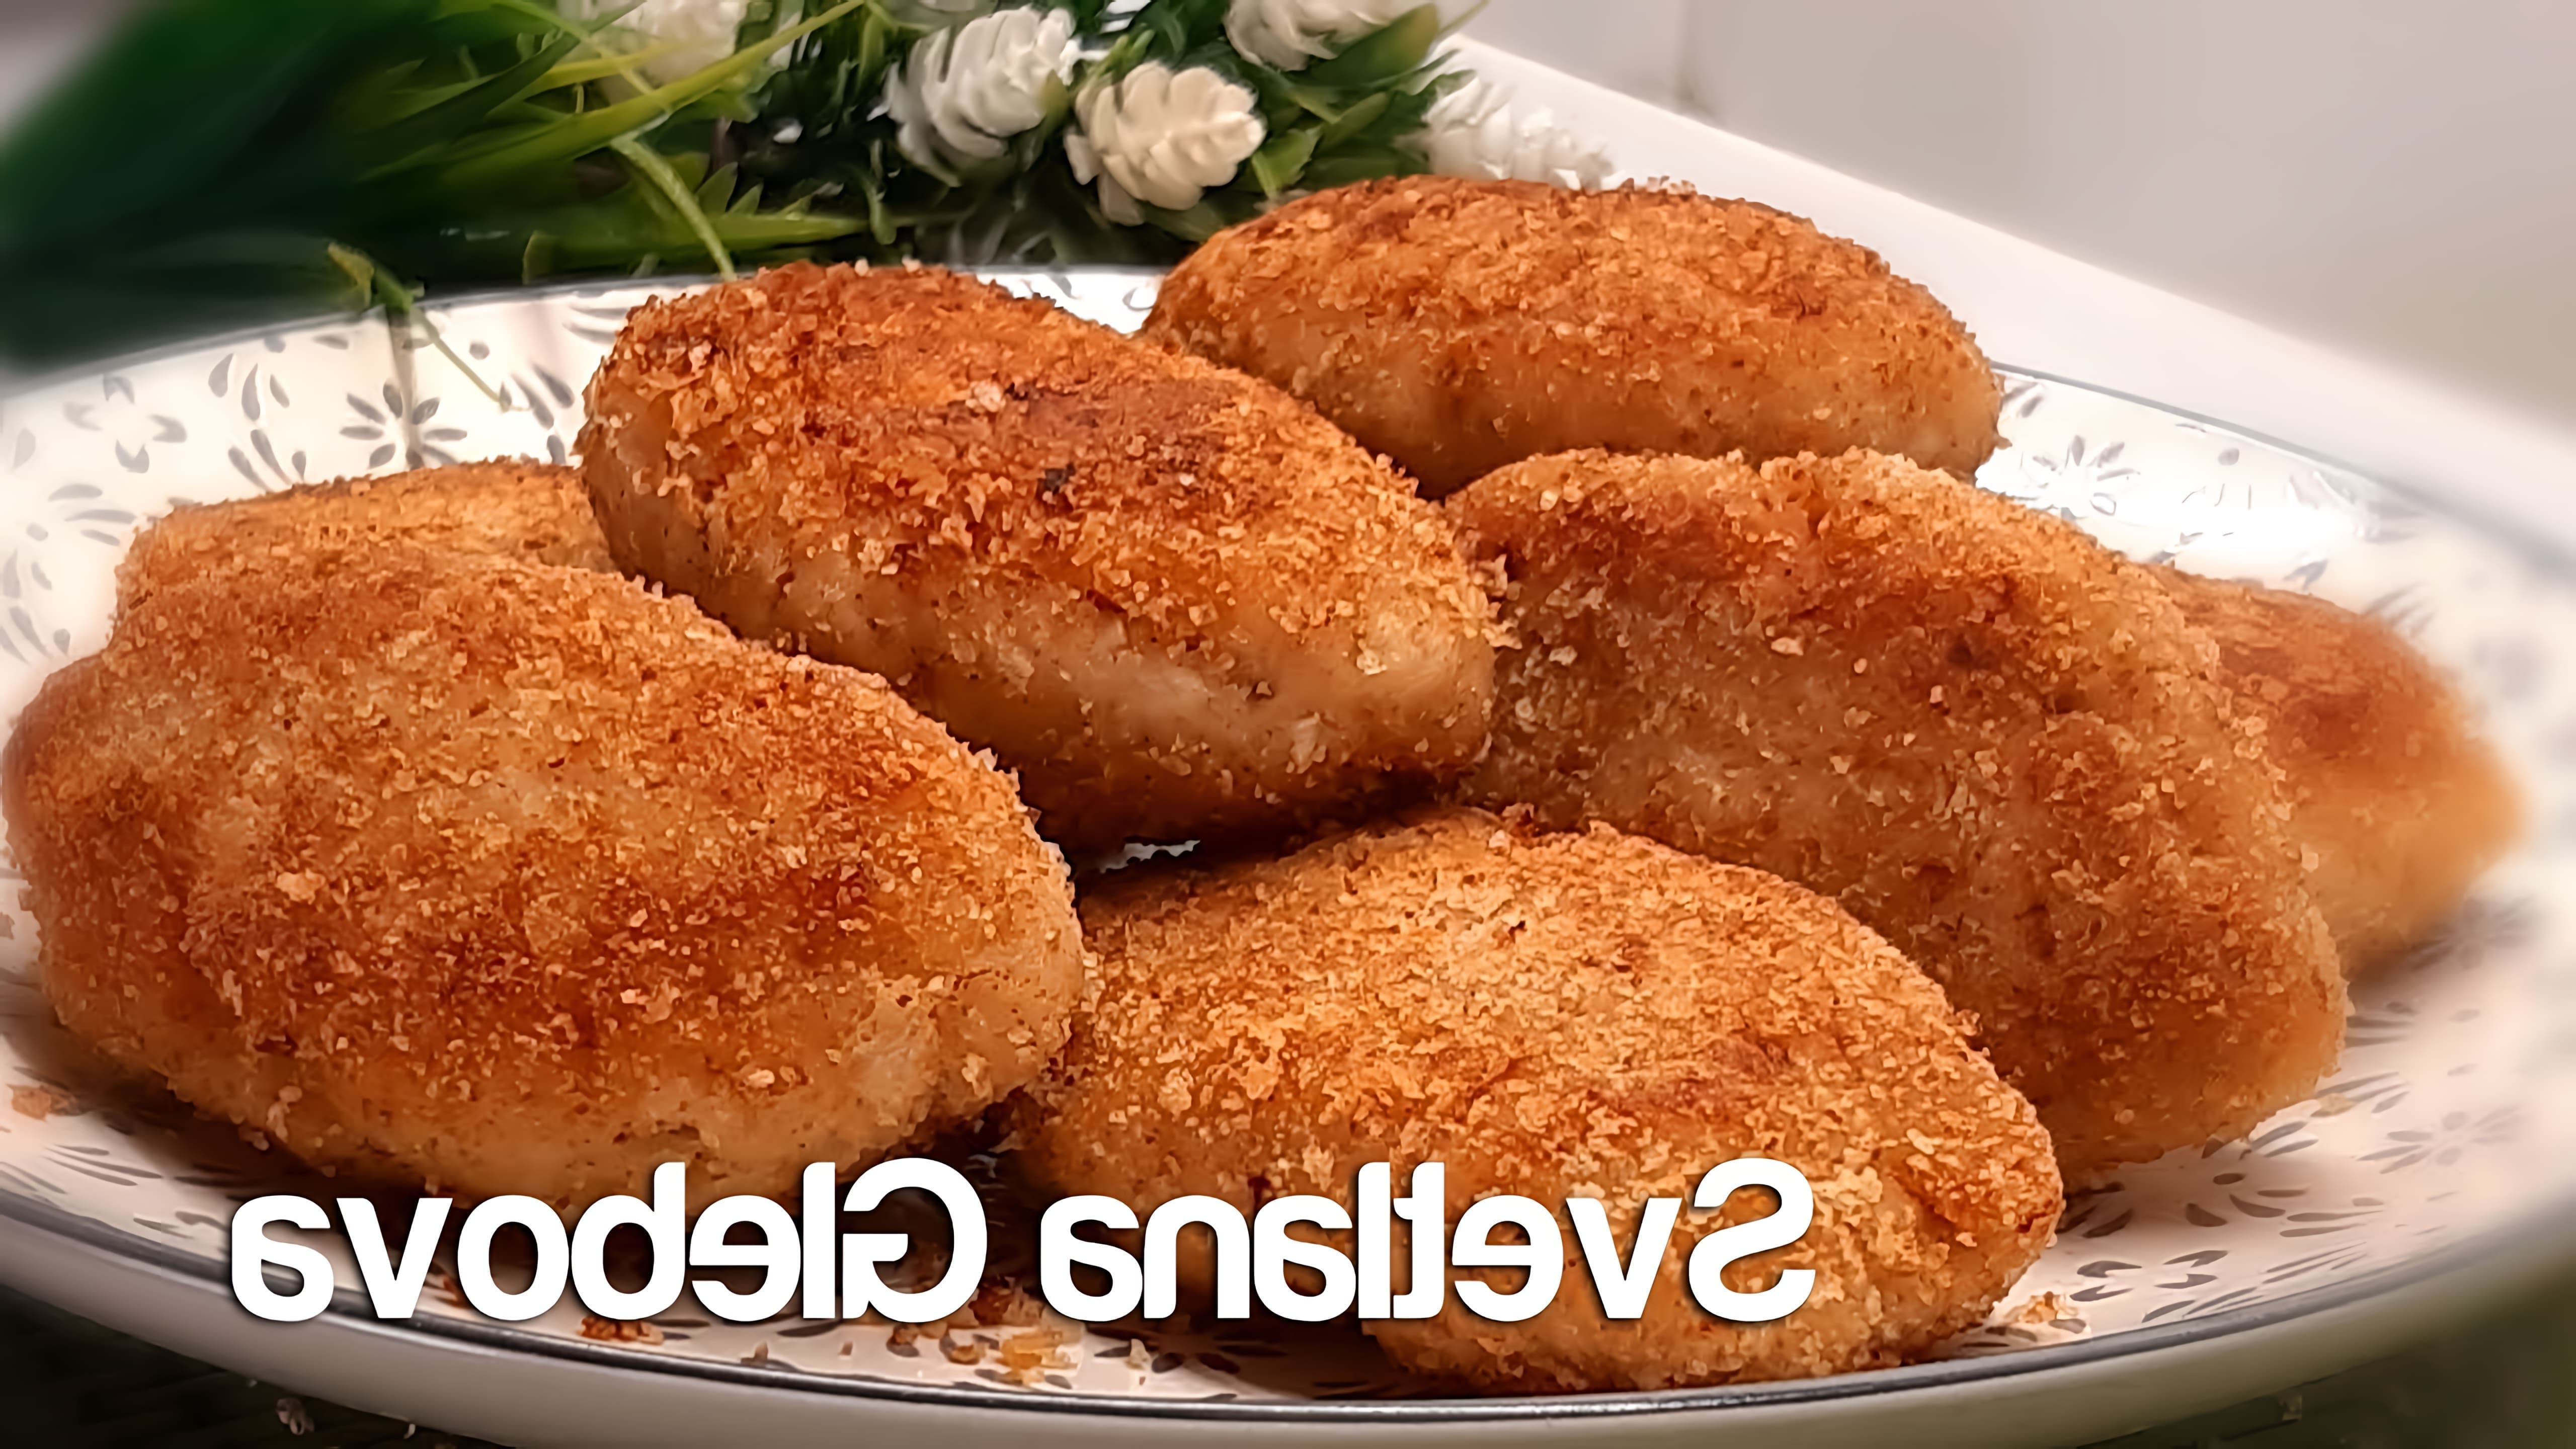 В этом видео демонстрируется рецепт приготовления очень вкусных куриных котлет с панировочными сухарями вместо хлеба